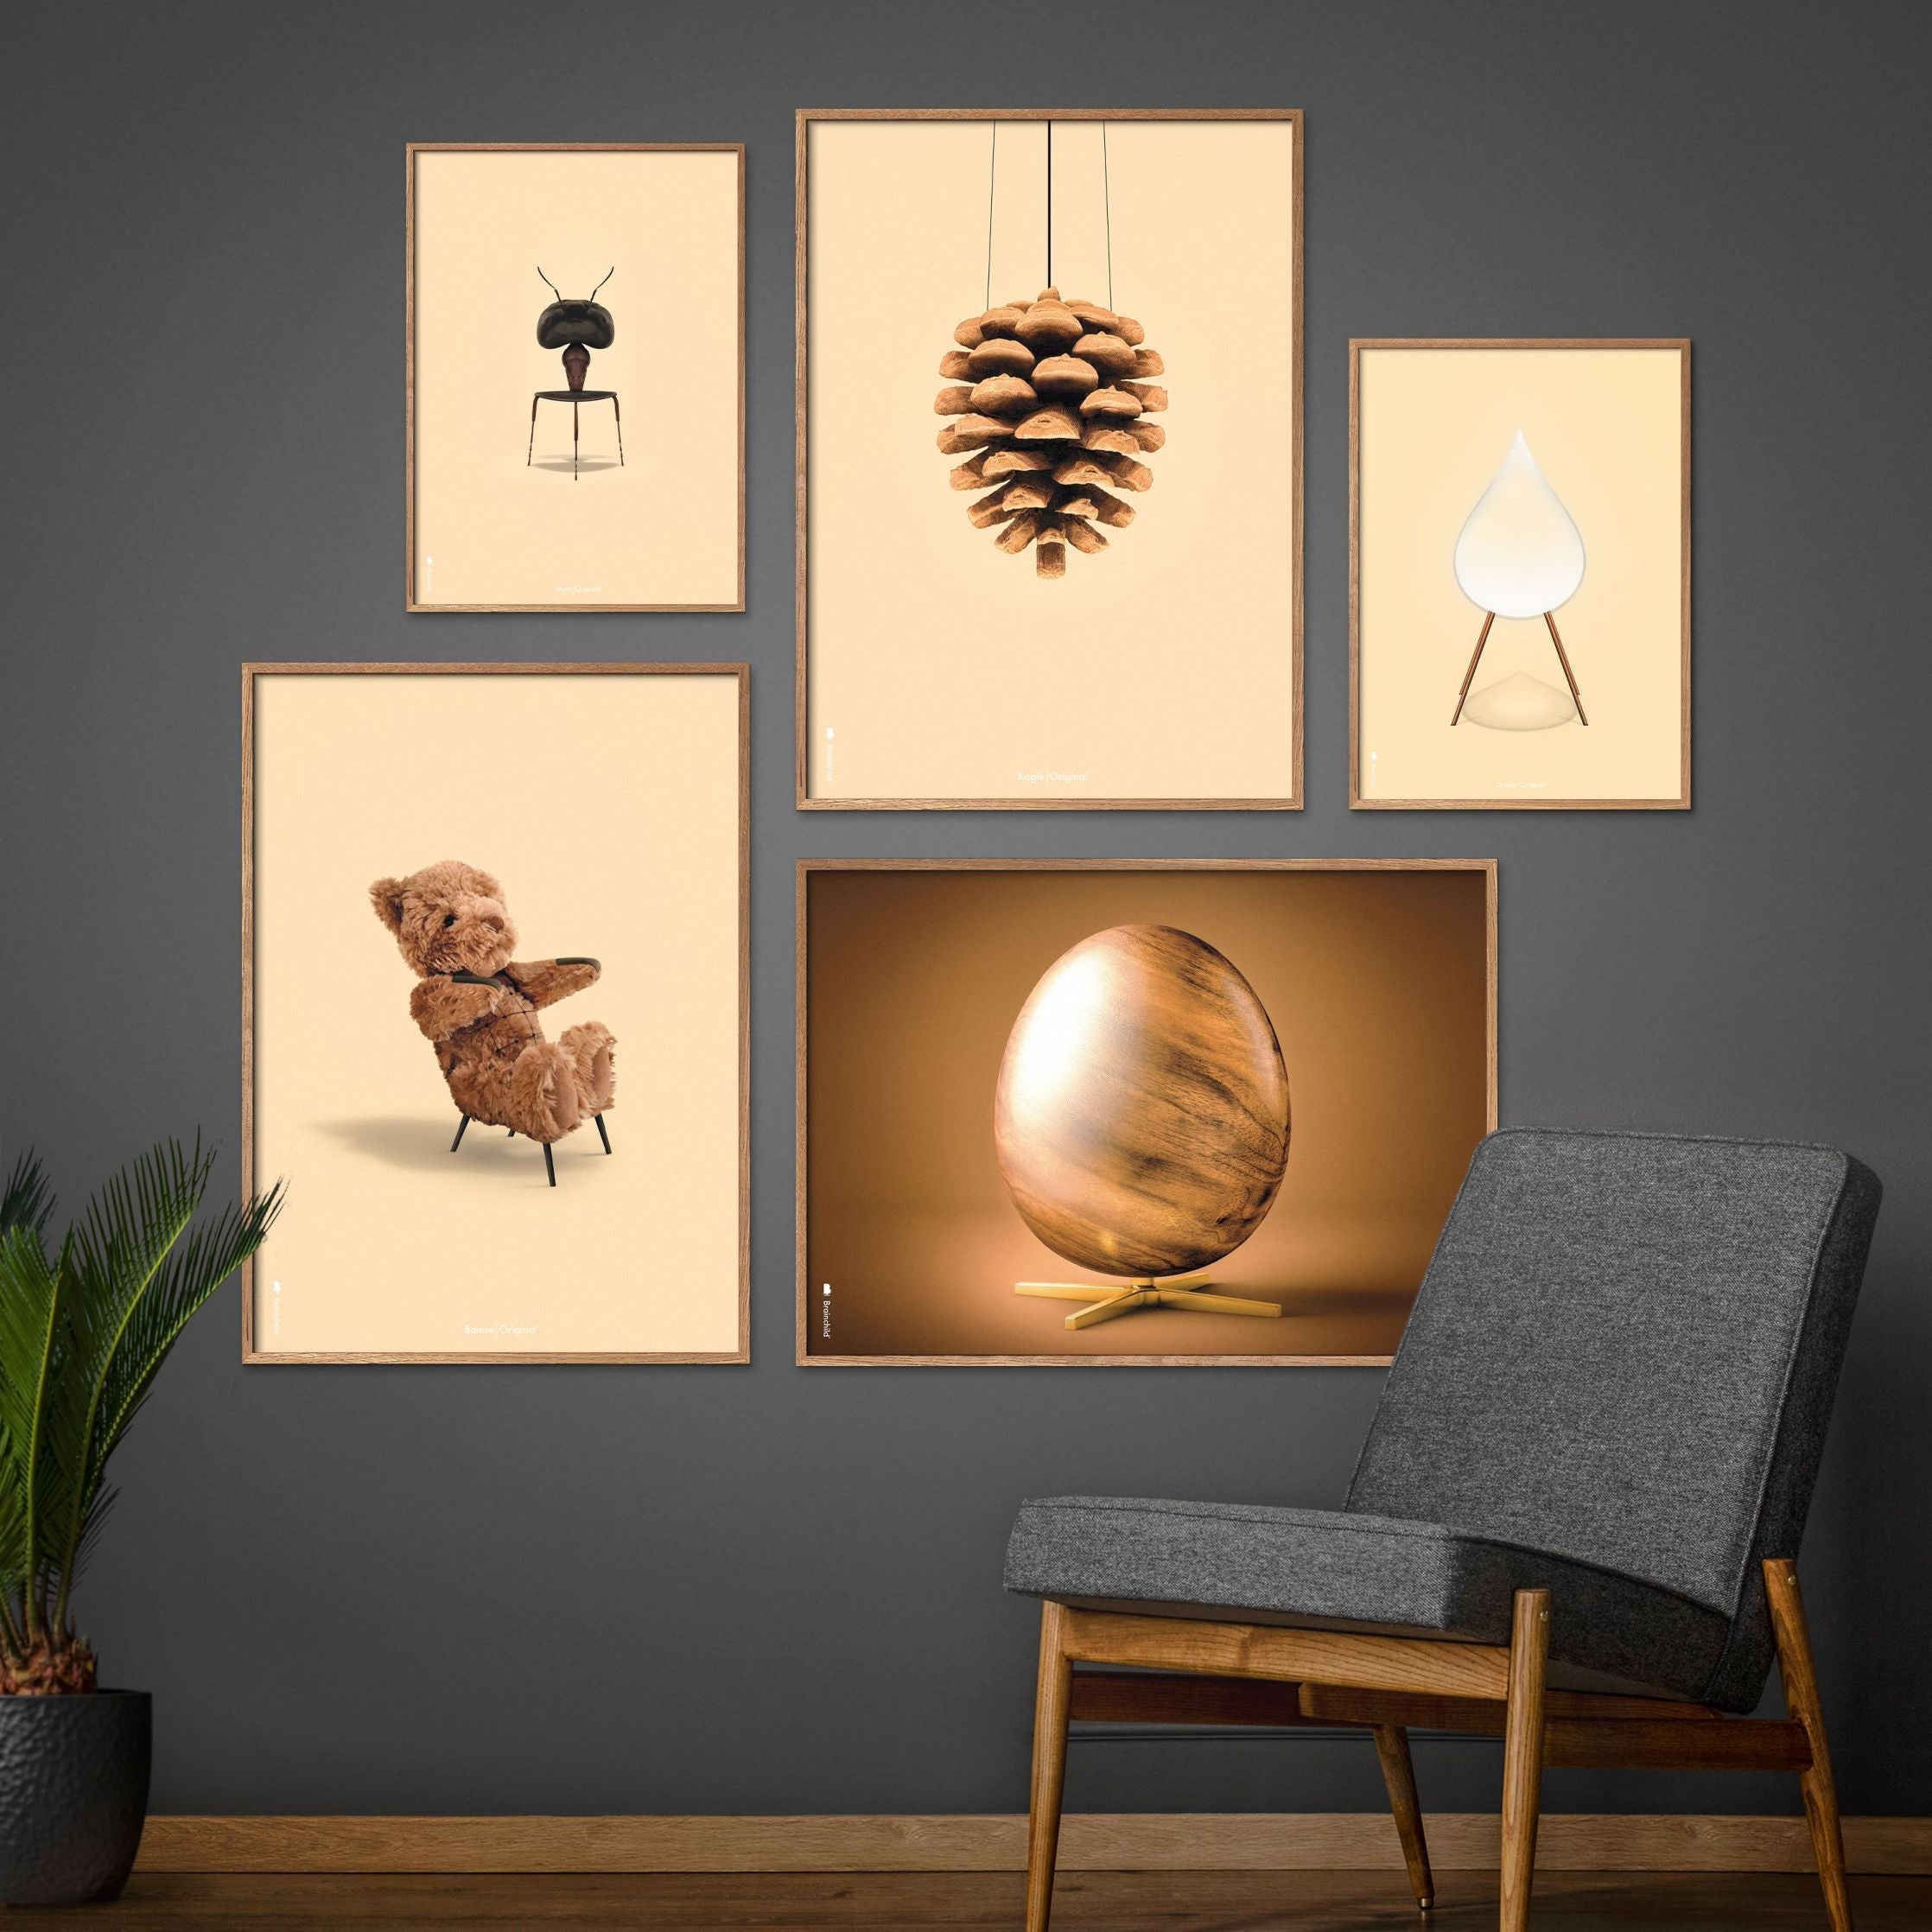 brainchild Klassiker Poster von Kiefernkegel, Rahmen aus dunklem Holz 50 x 70 cm, sandfarbener Hintergrund